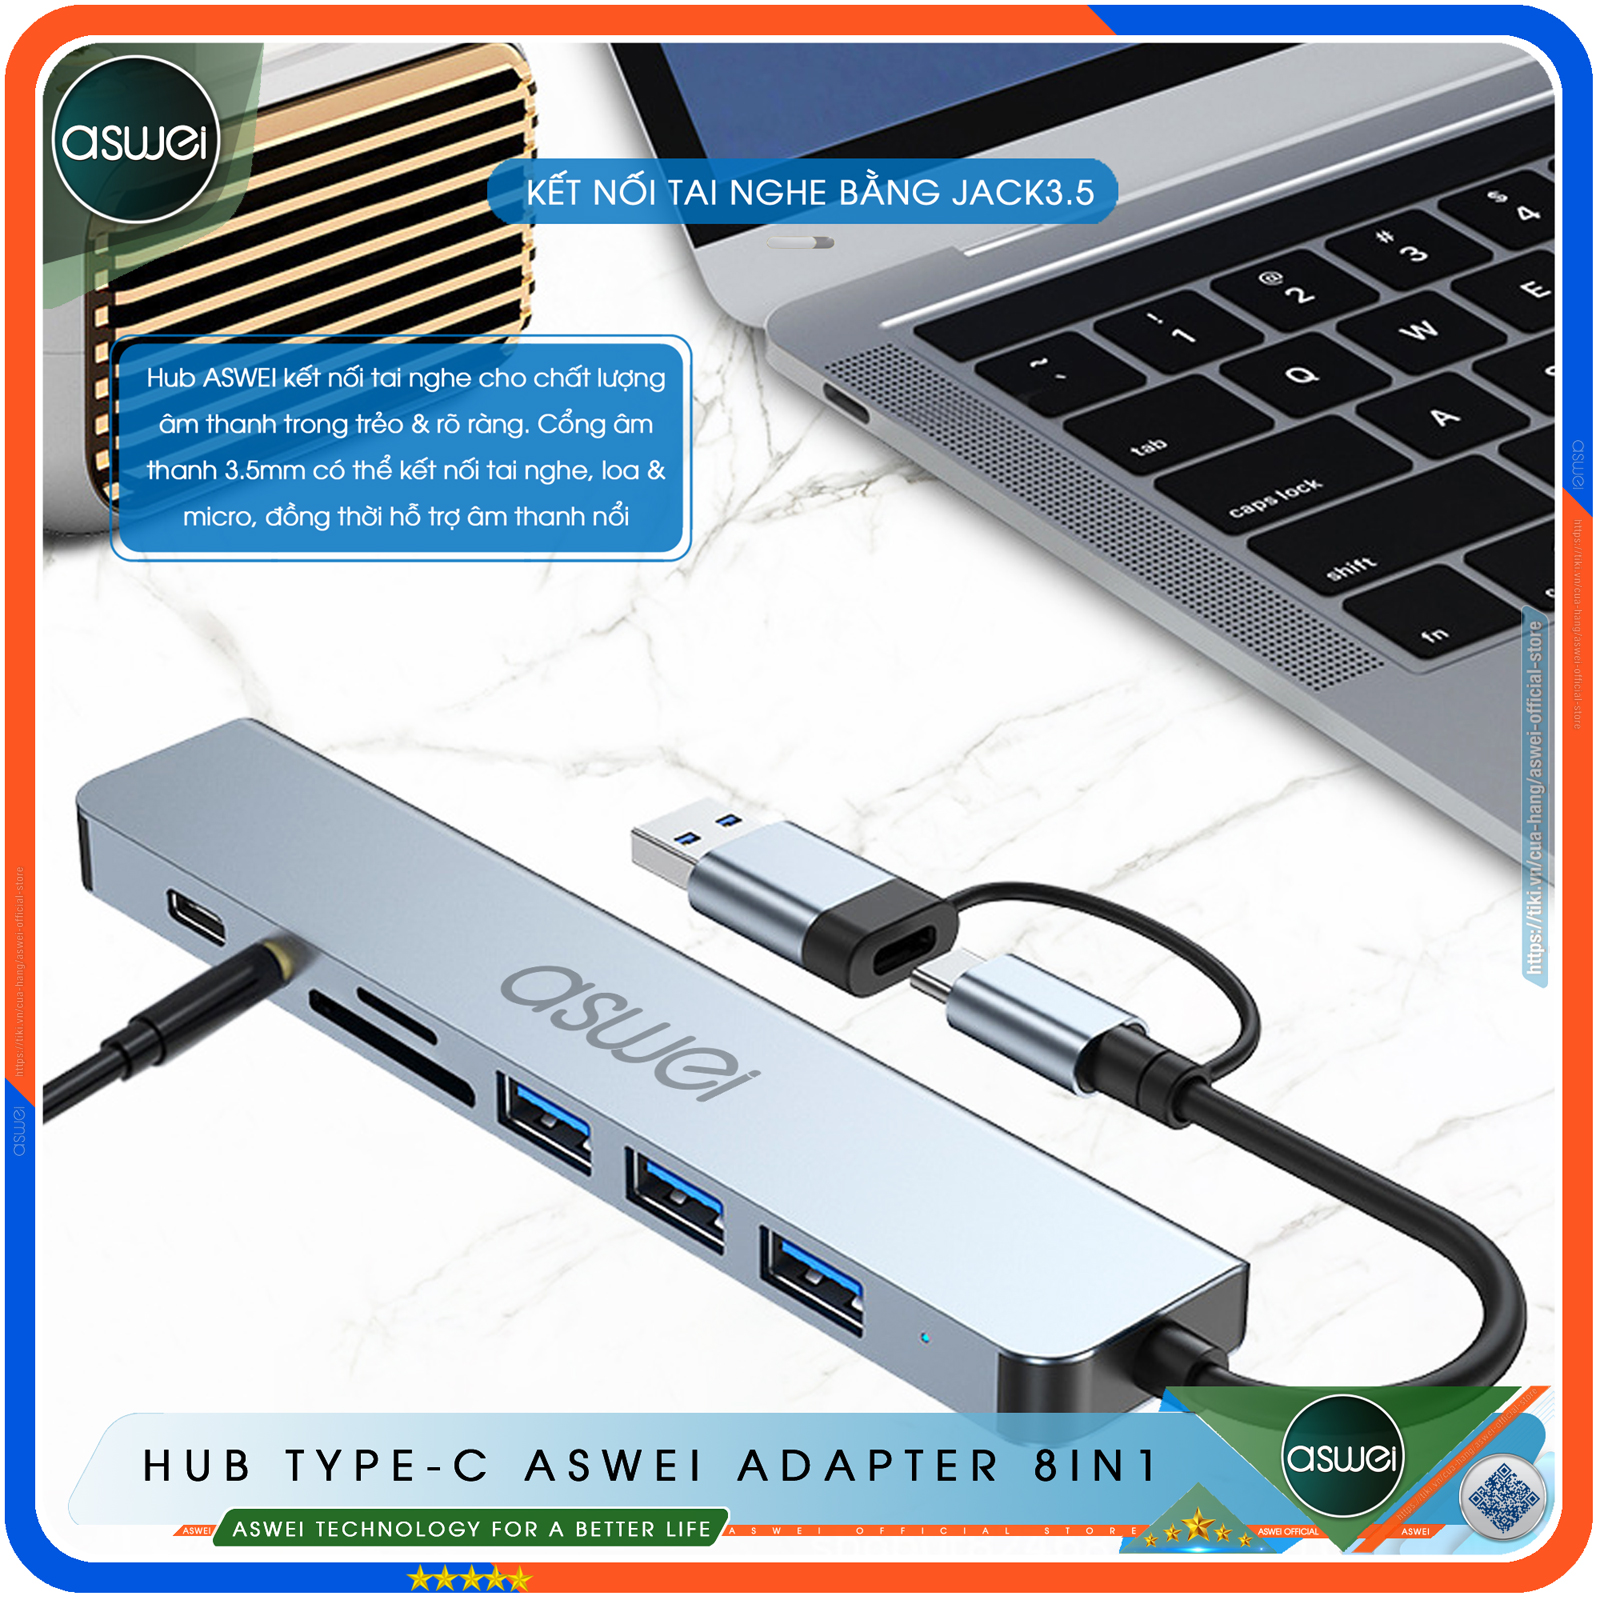 Hub Chuyển Đổi USB Type C ASWEI 8 in 1 To USB 3.0, SD, TF, USB C, Audio 3.5mm - Hàng Chính Hãng